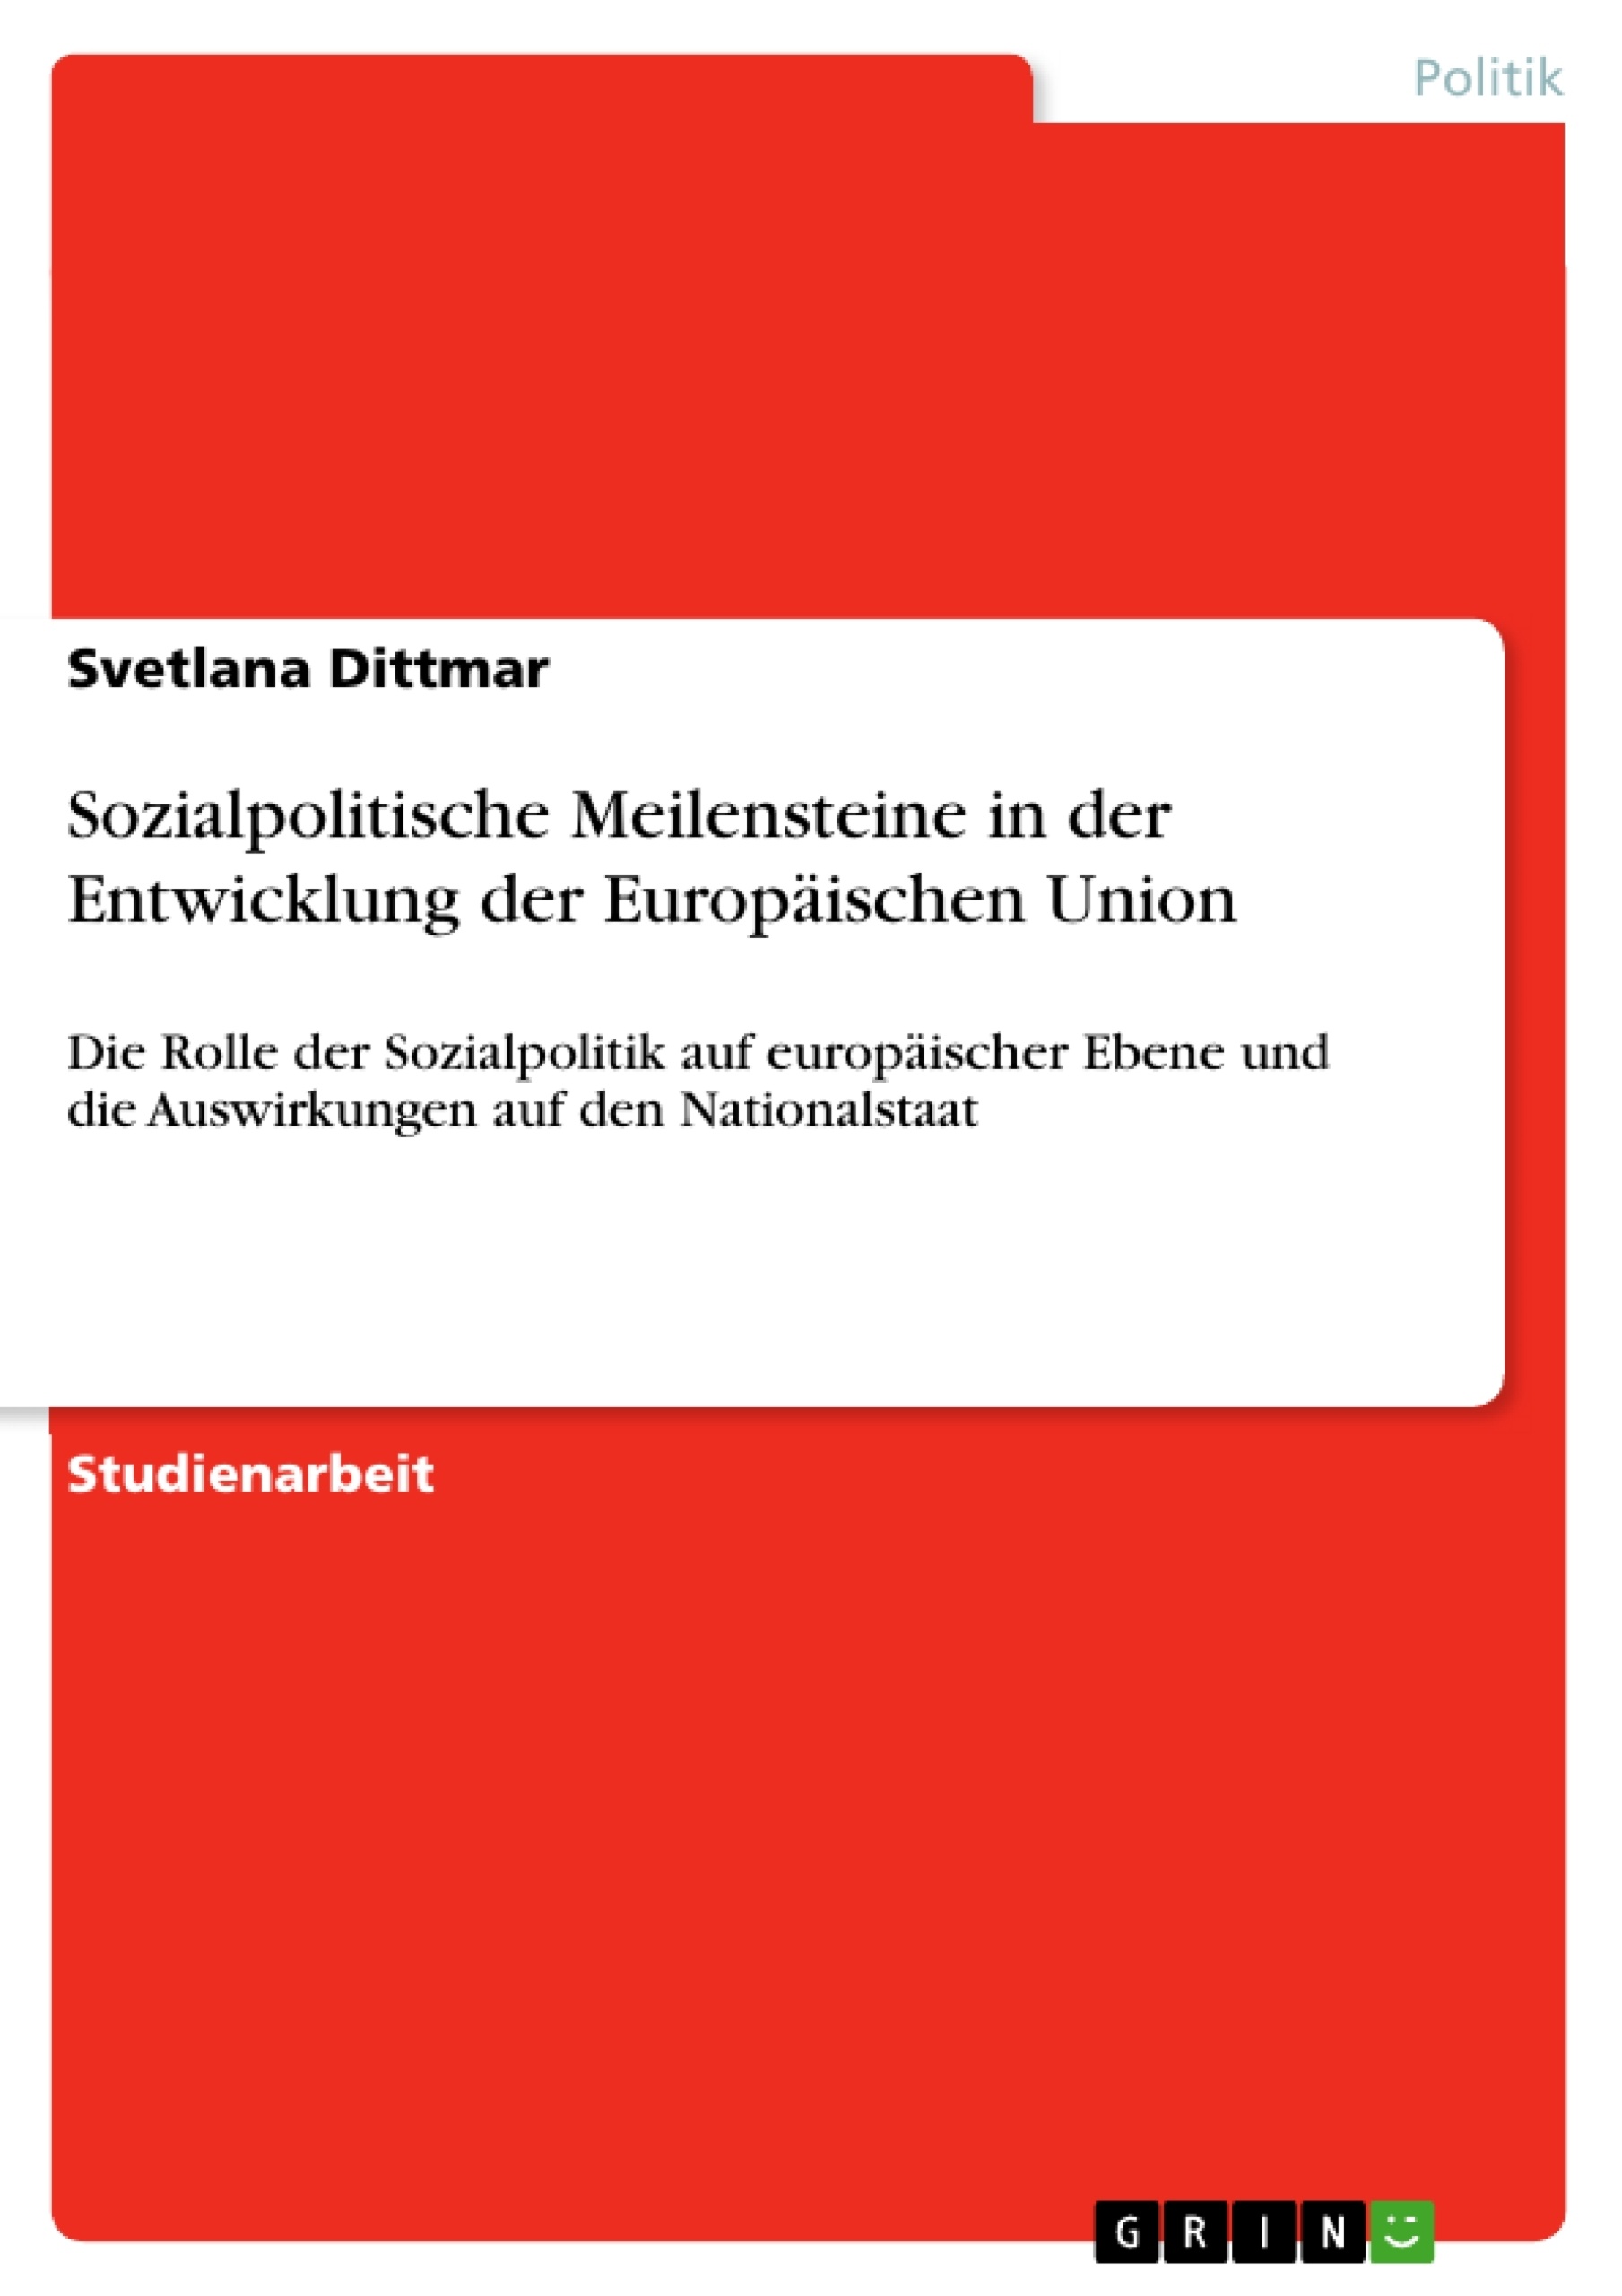 Titre: Sozialpolitische Meilensteine in der Entwicklung der Europäischen Union